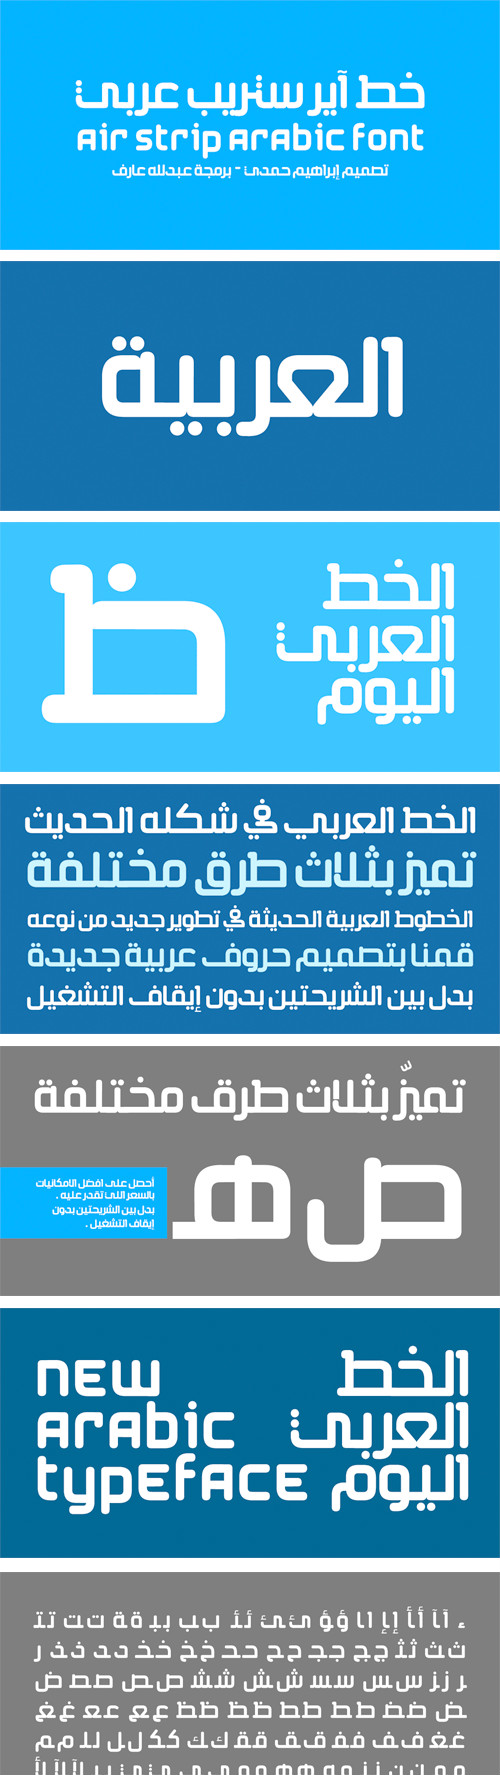 Air Strip Arabic font